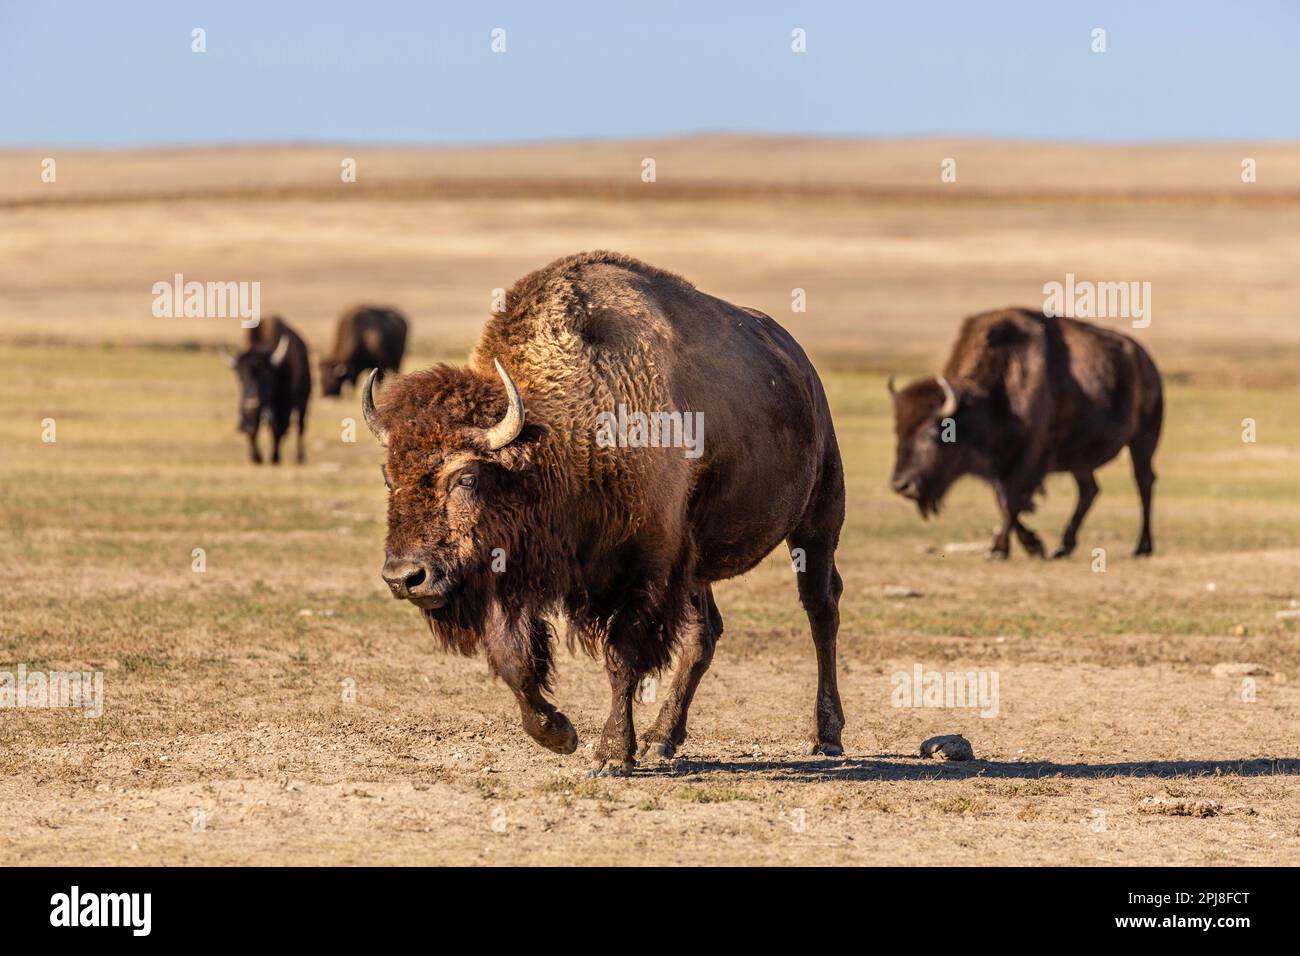 Buffalo / Bison of Badlands National Park, South Dakota, United States of America Stock Photo